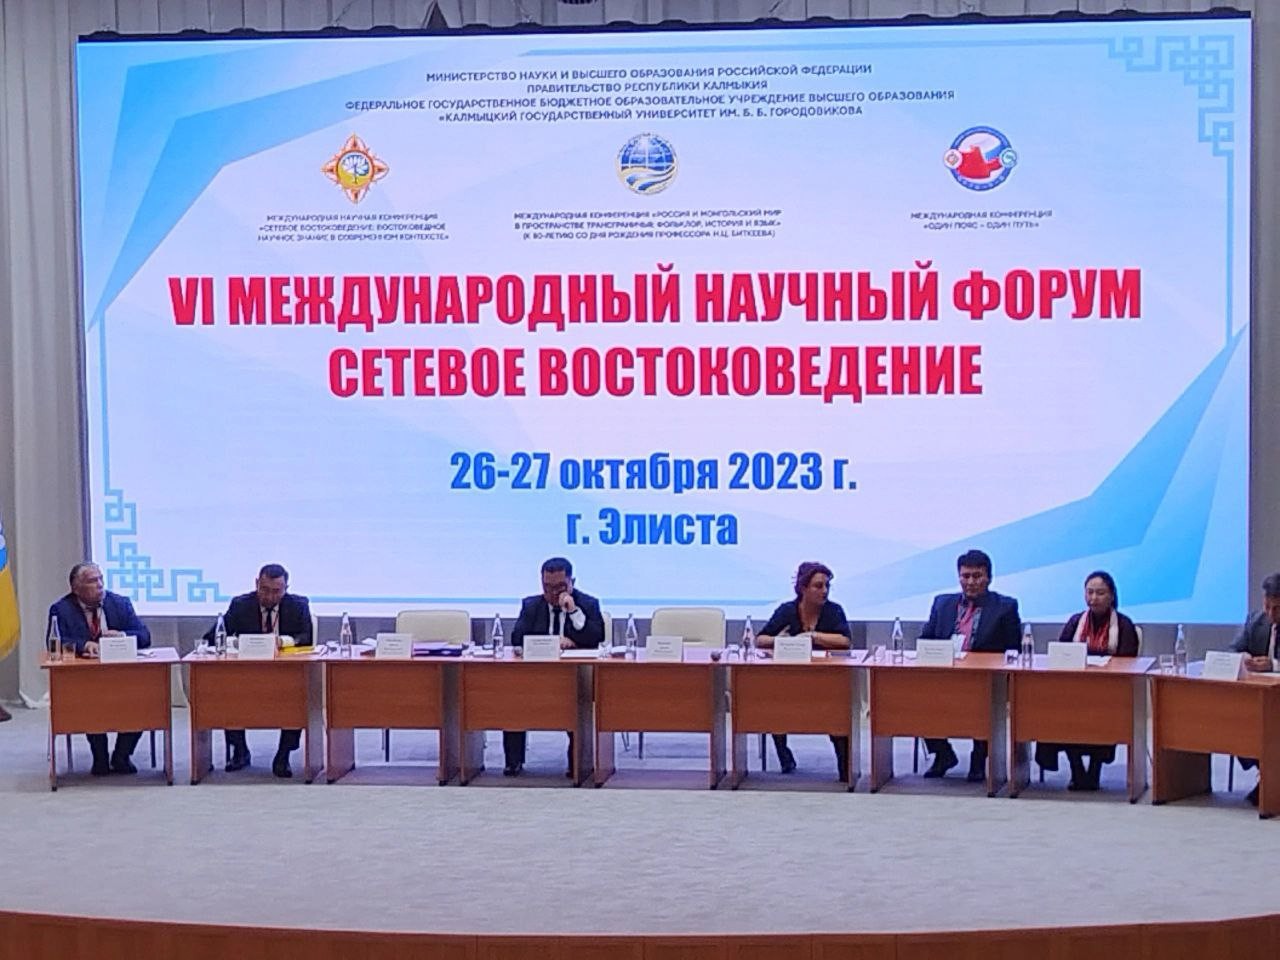 В КалмГУ прошёл 1й день 6-го международного научного форума «Сетевое востоковедение»